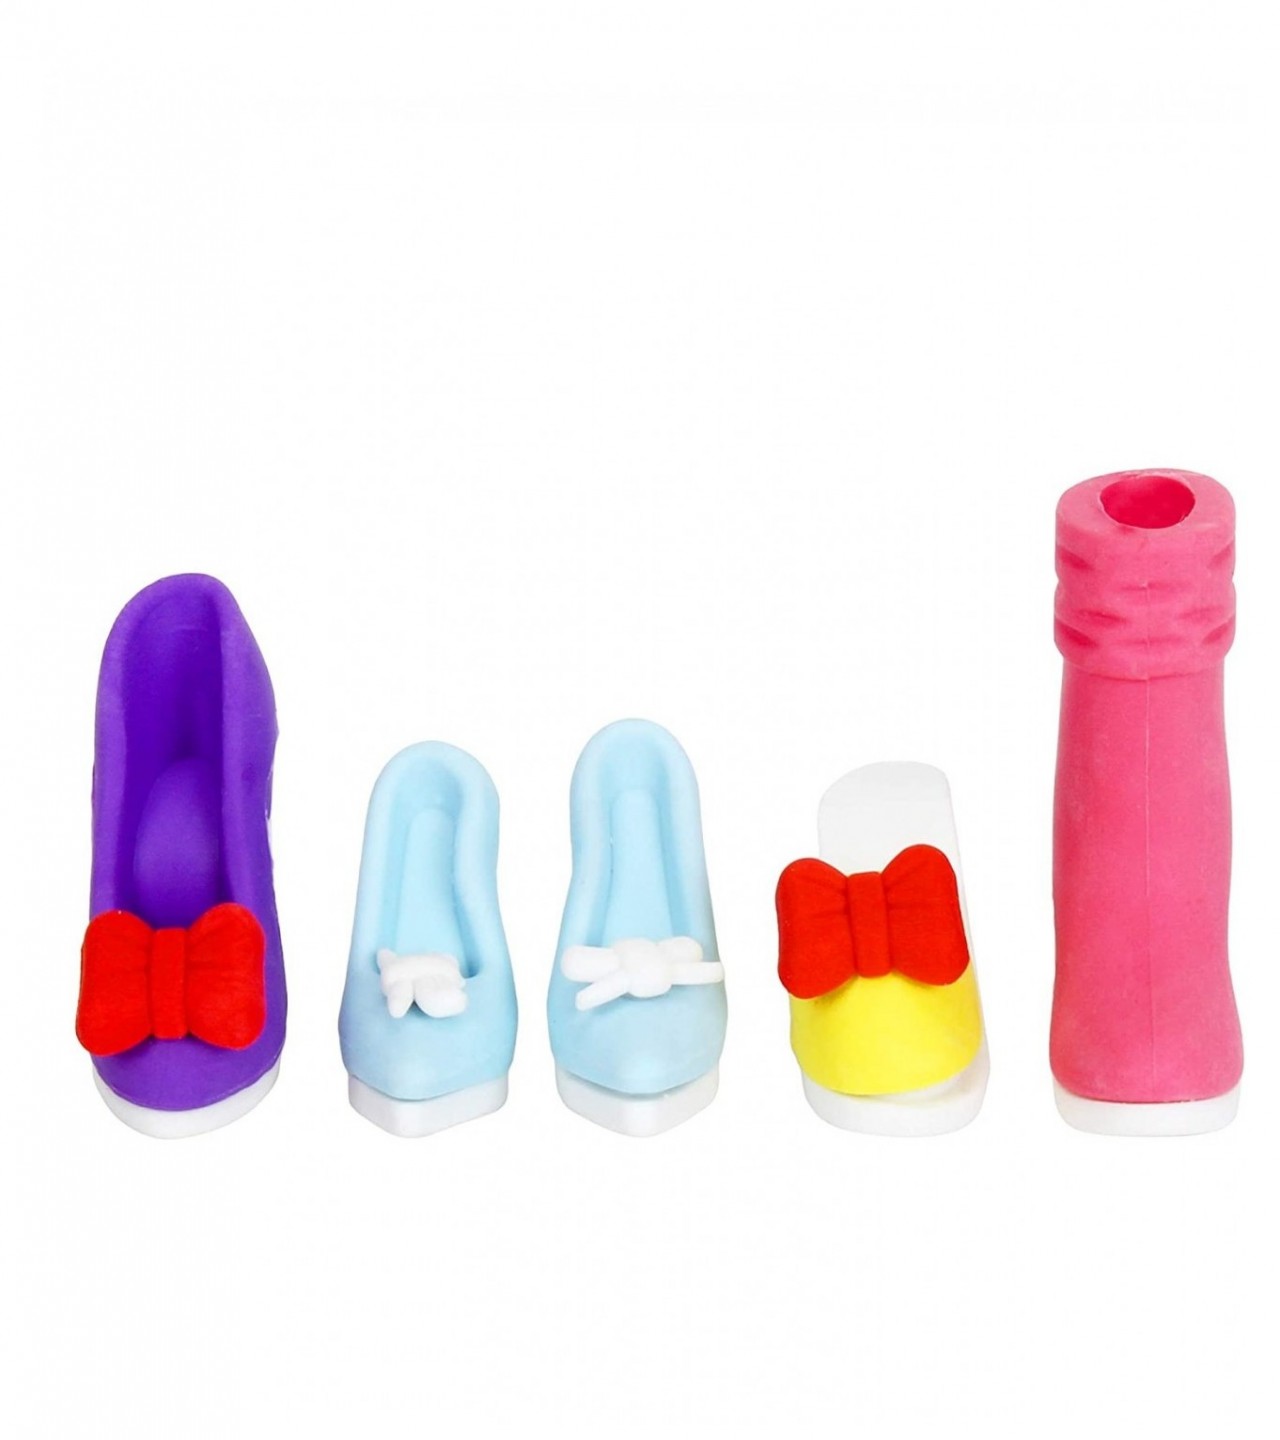 Girl Eraser Set for Kids School Student Gift Item Non PVC QH-8320